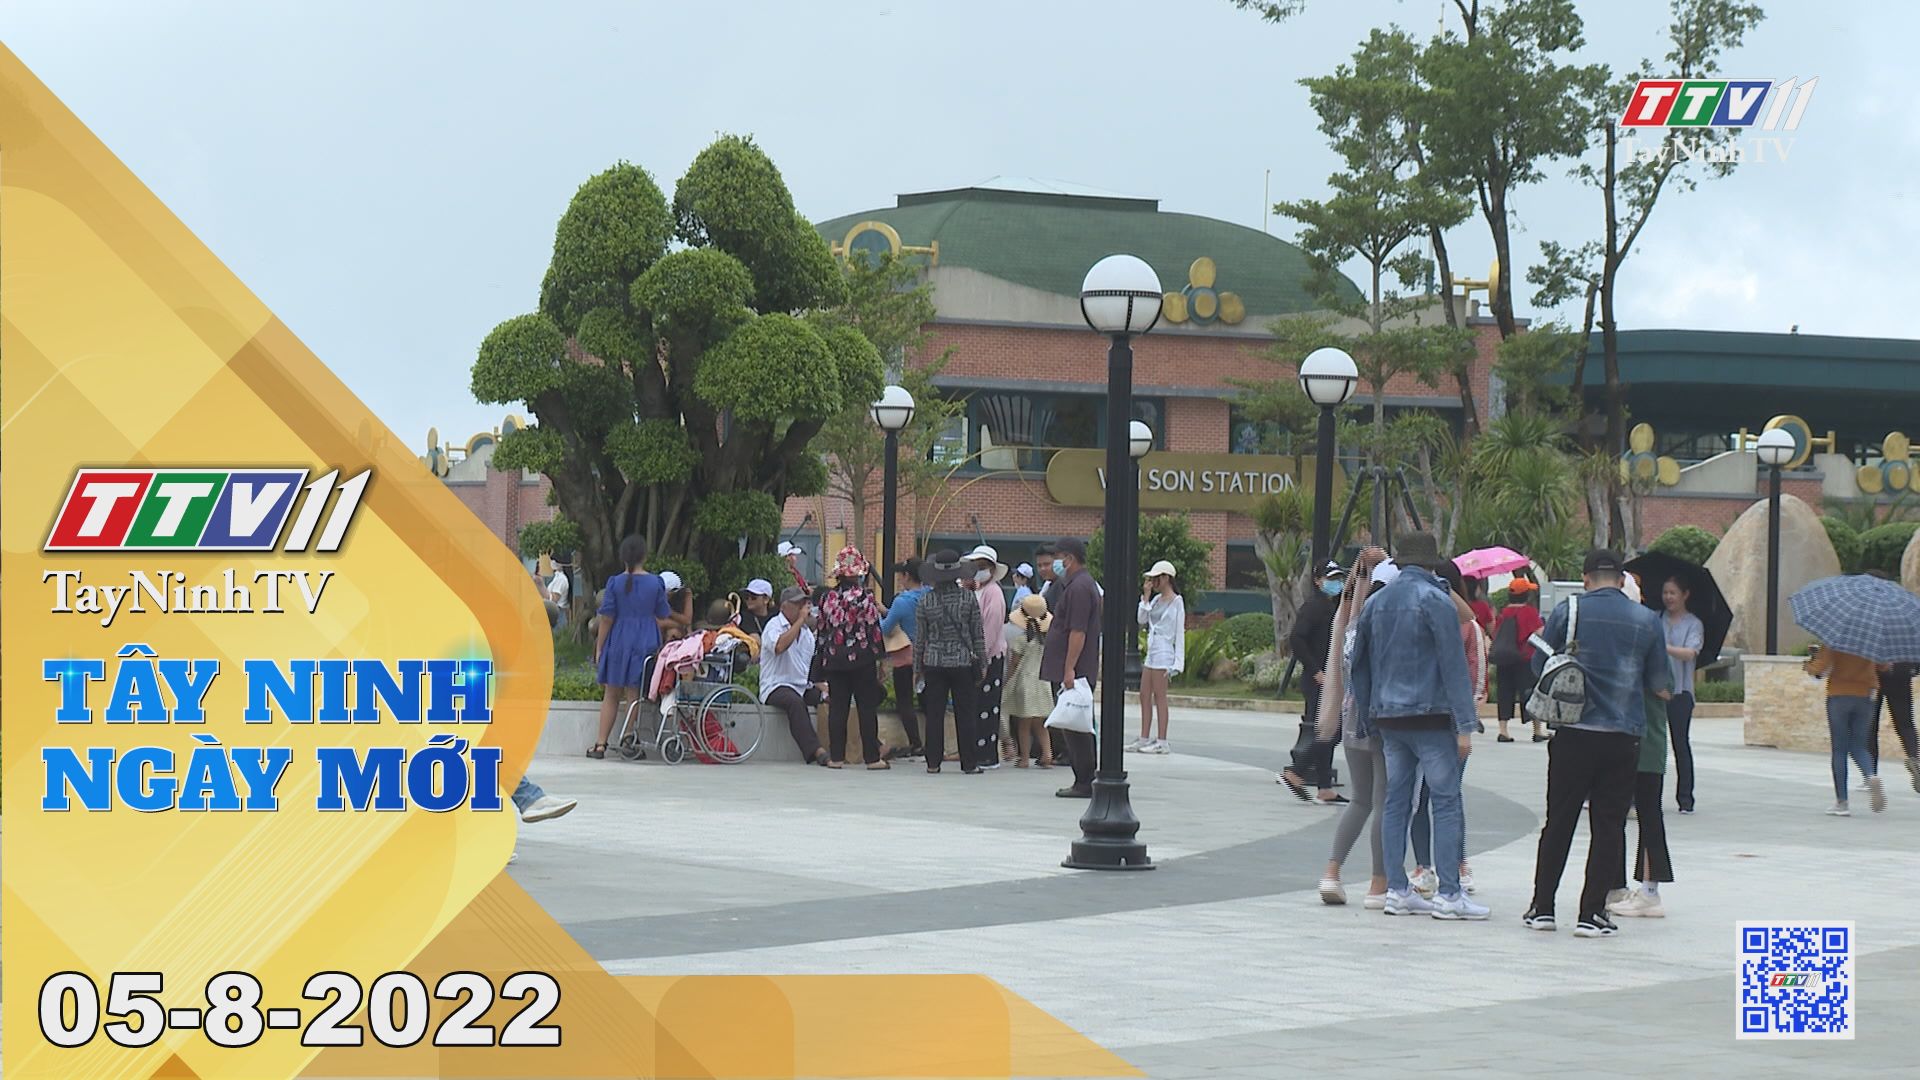 Tây Ninh ngày mới 05-8-2022 | Tin tức hôm nay | TayNinhTV